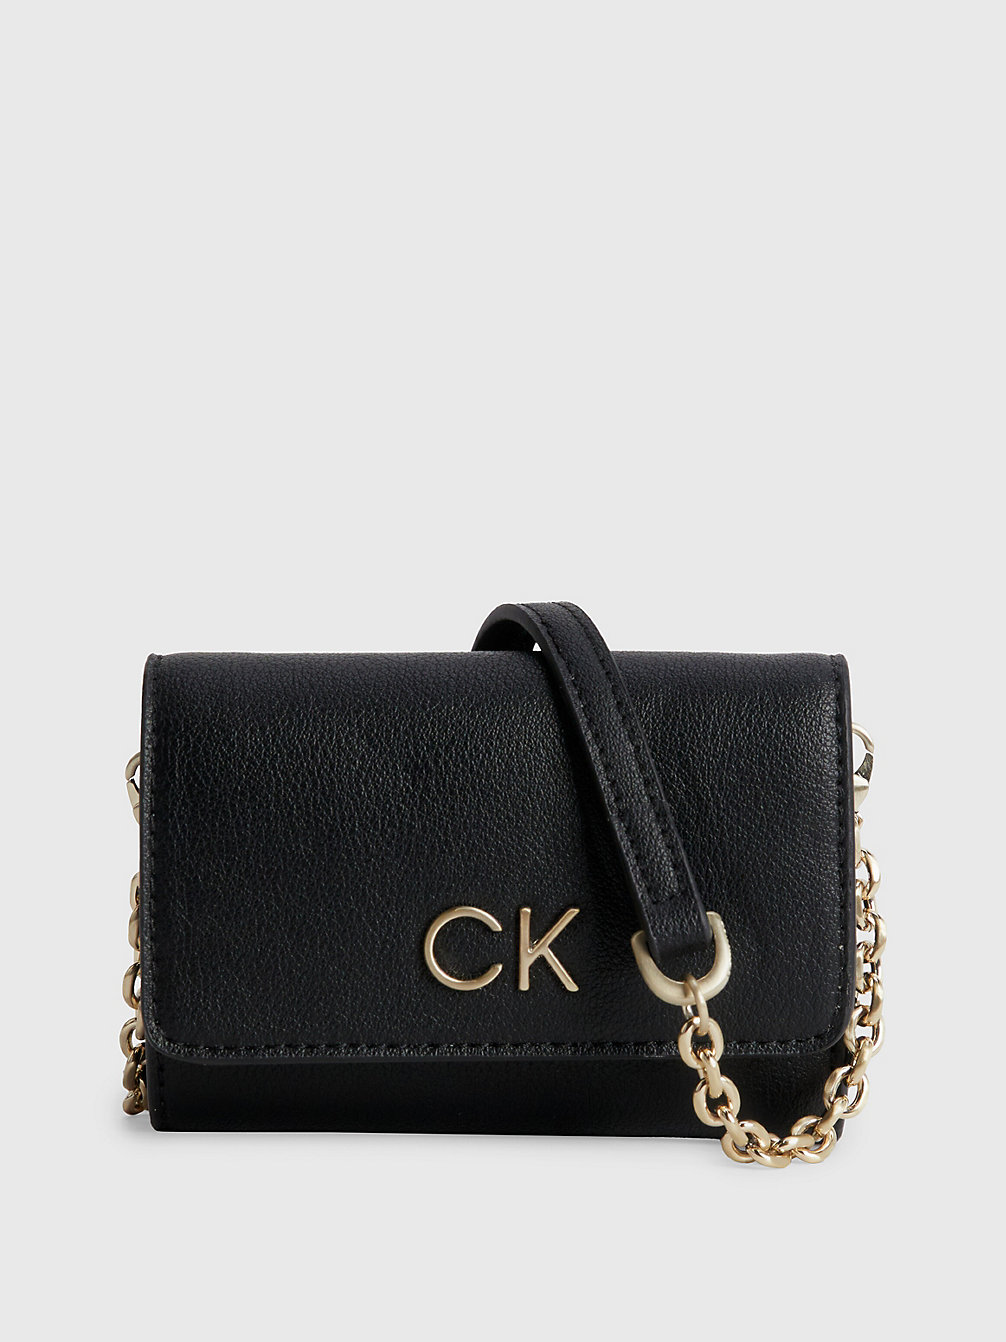 CK BLACK > Dreifach Faltbare Portemonnaie-Tasche Aus Recyceltem Material > undefined Damen - Calvin Klein